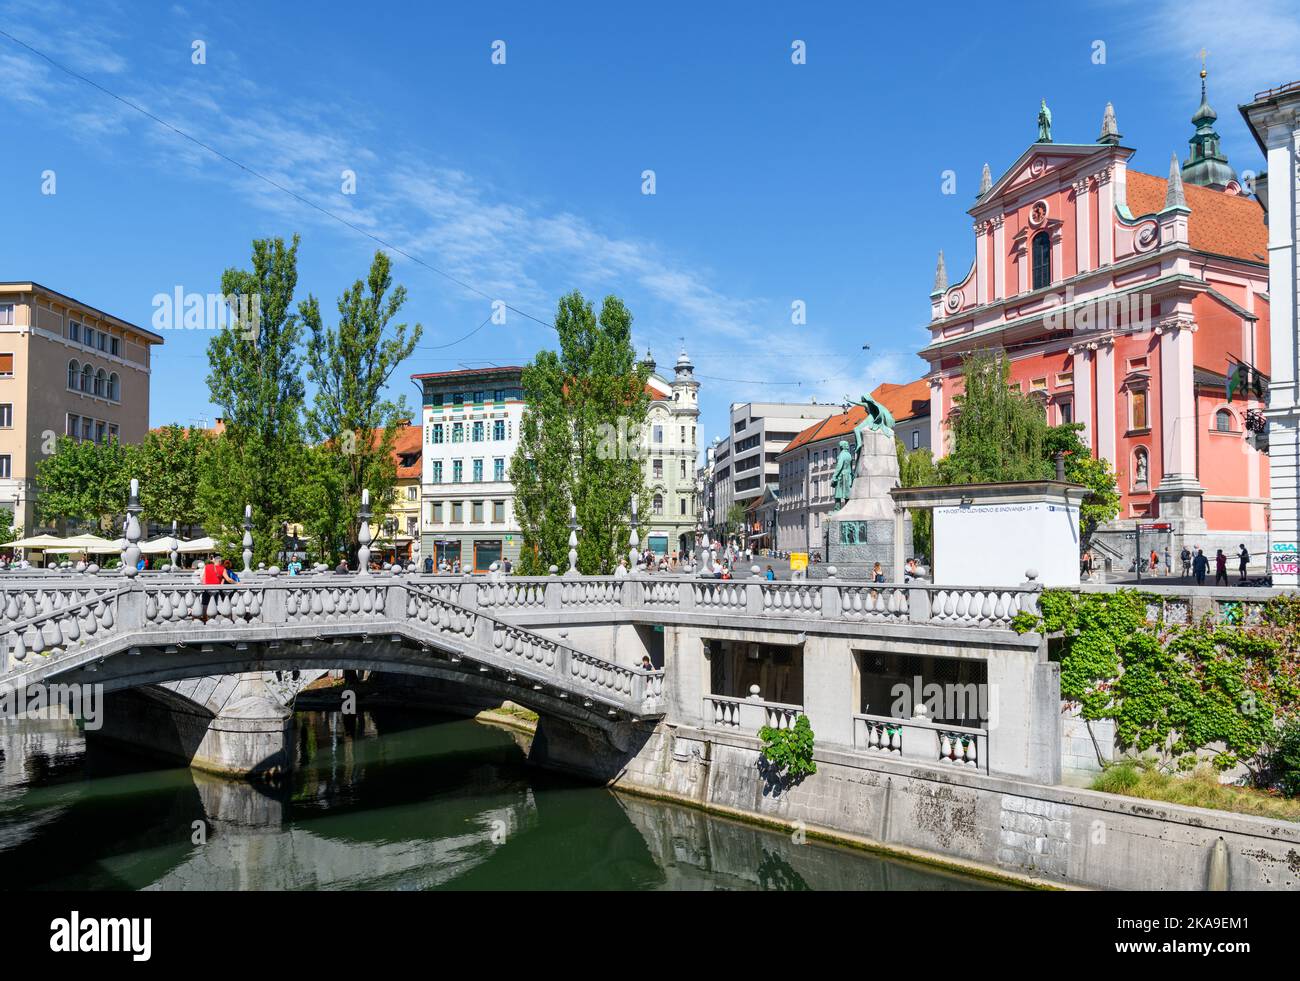 La rivière et le pont triple de la rivière Ljubljana, qui se dirige vers la place Preseren et l'église franciscaine de l'Annonciation, dans la vieille ville de Ljubljana, en Slovénie Banque D'Images